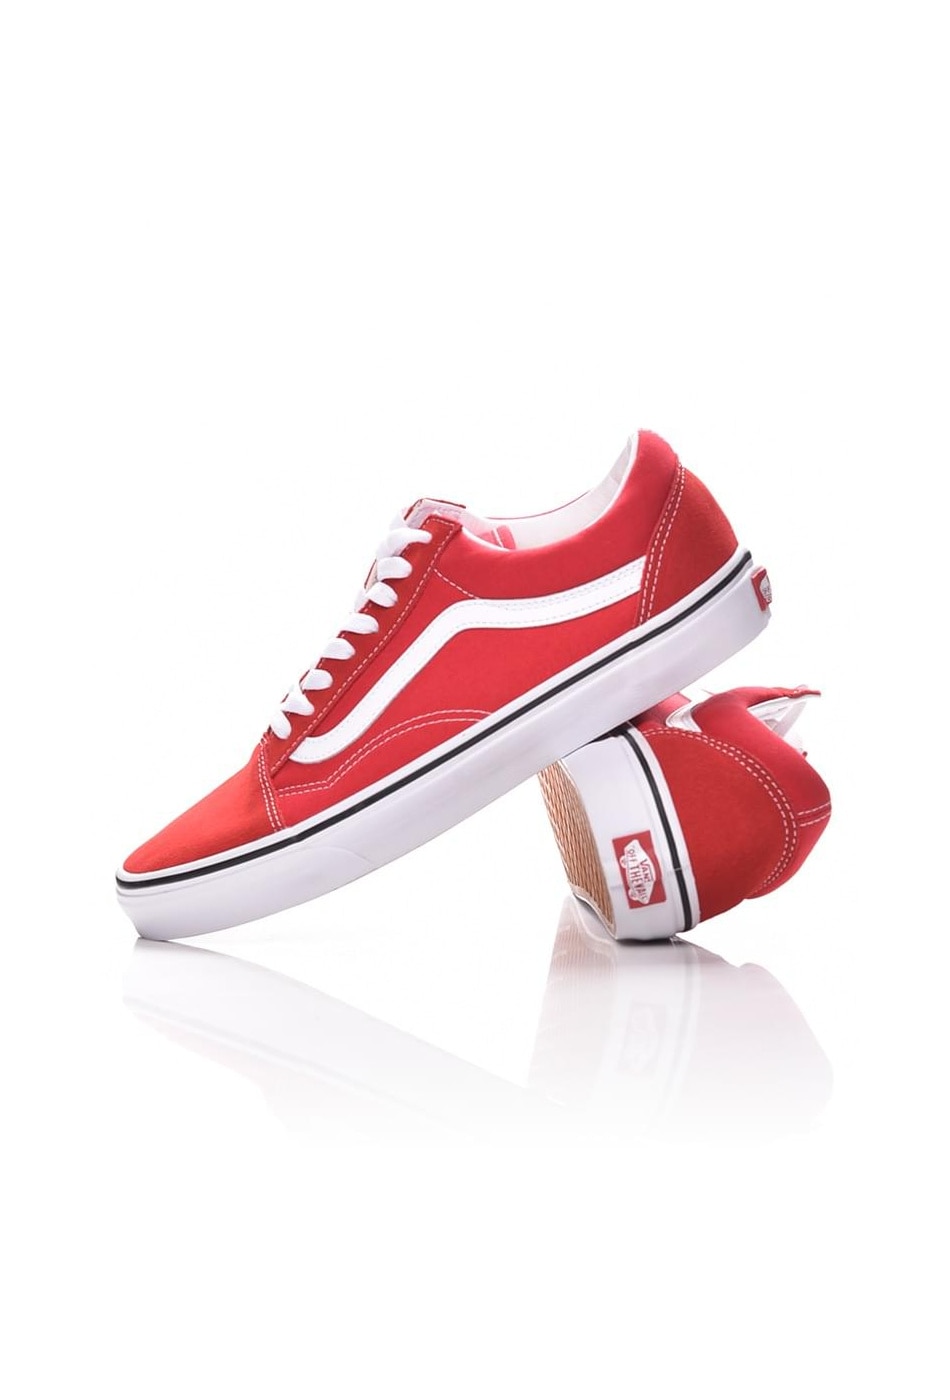 vans shoe classic red